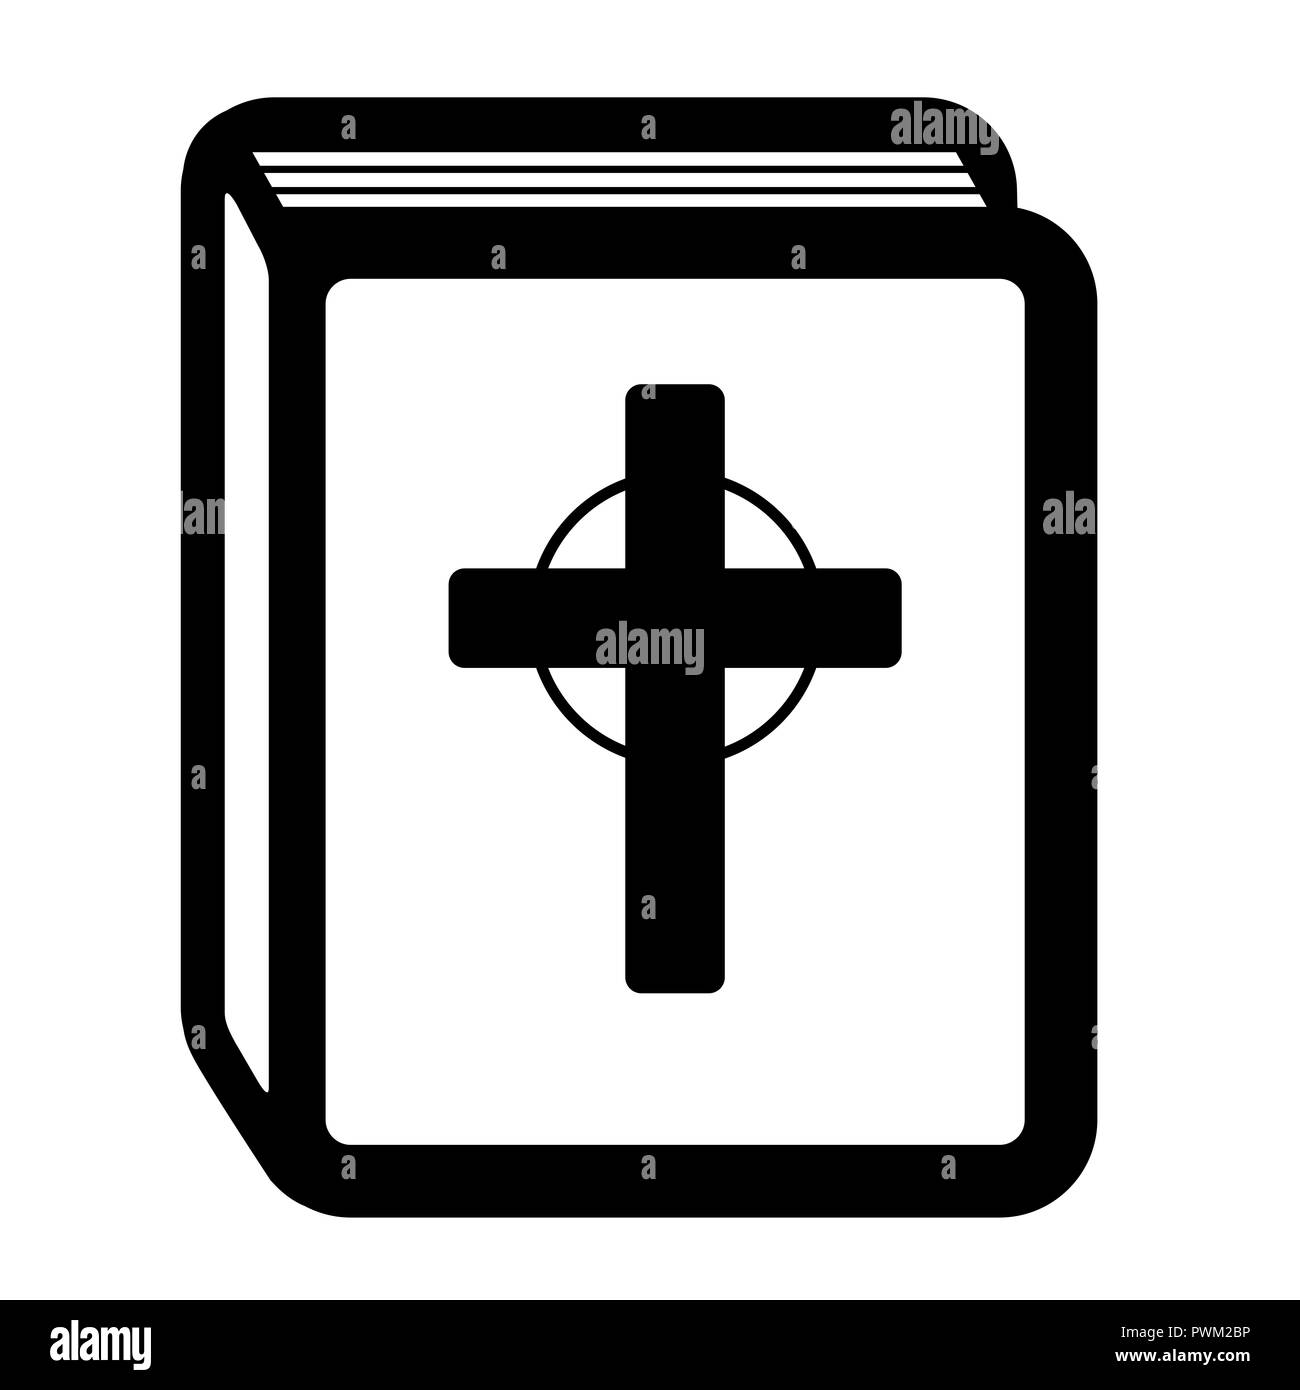 La Santa Bibbia pittogramma. Icona a forma di libro con una croce cristiana, simbolo religioso del cristianesimo. Foto Stock